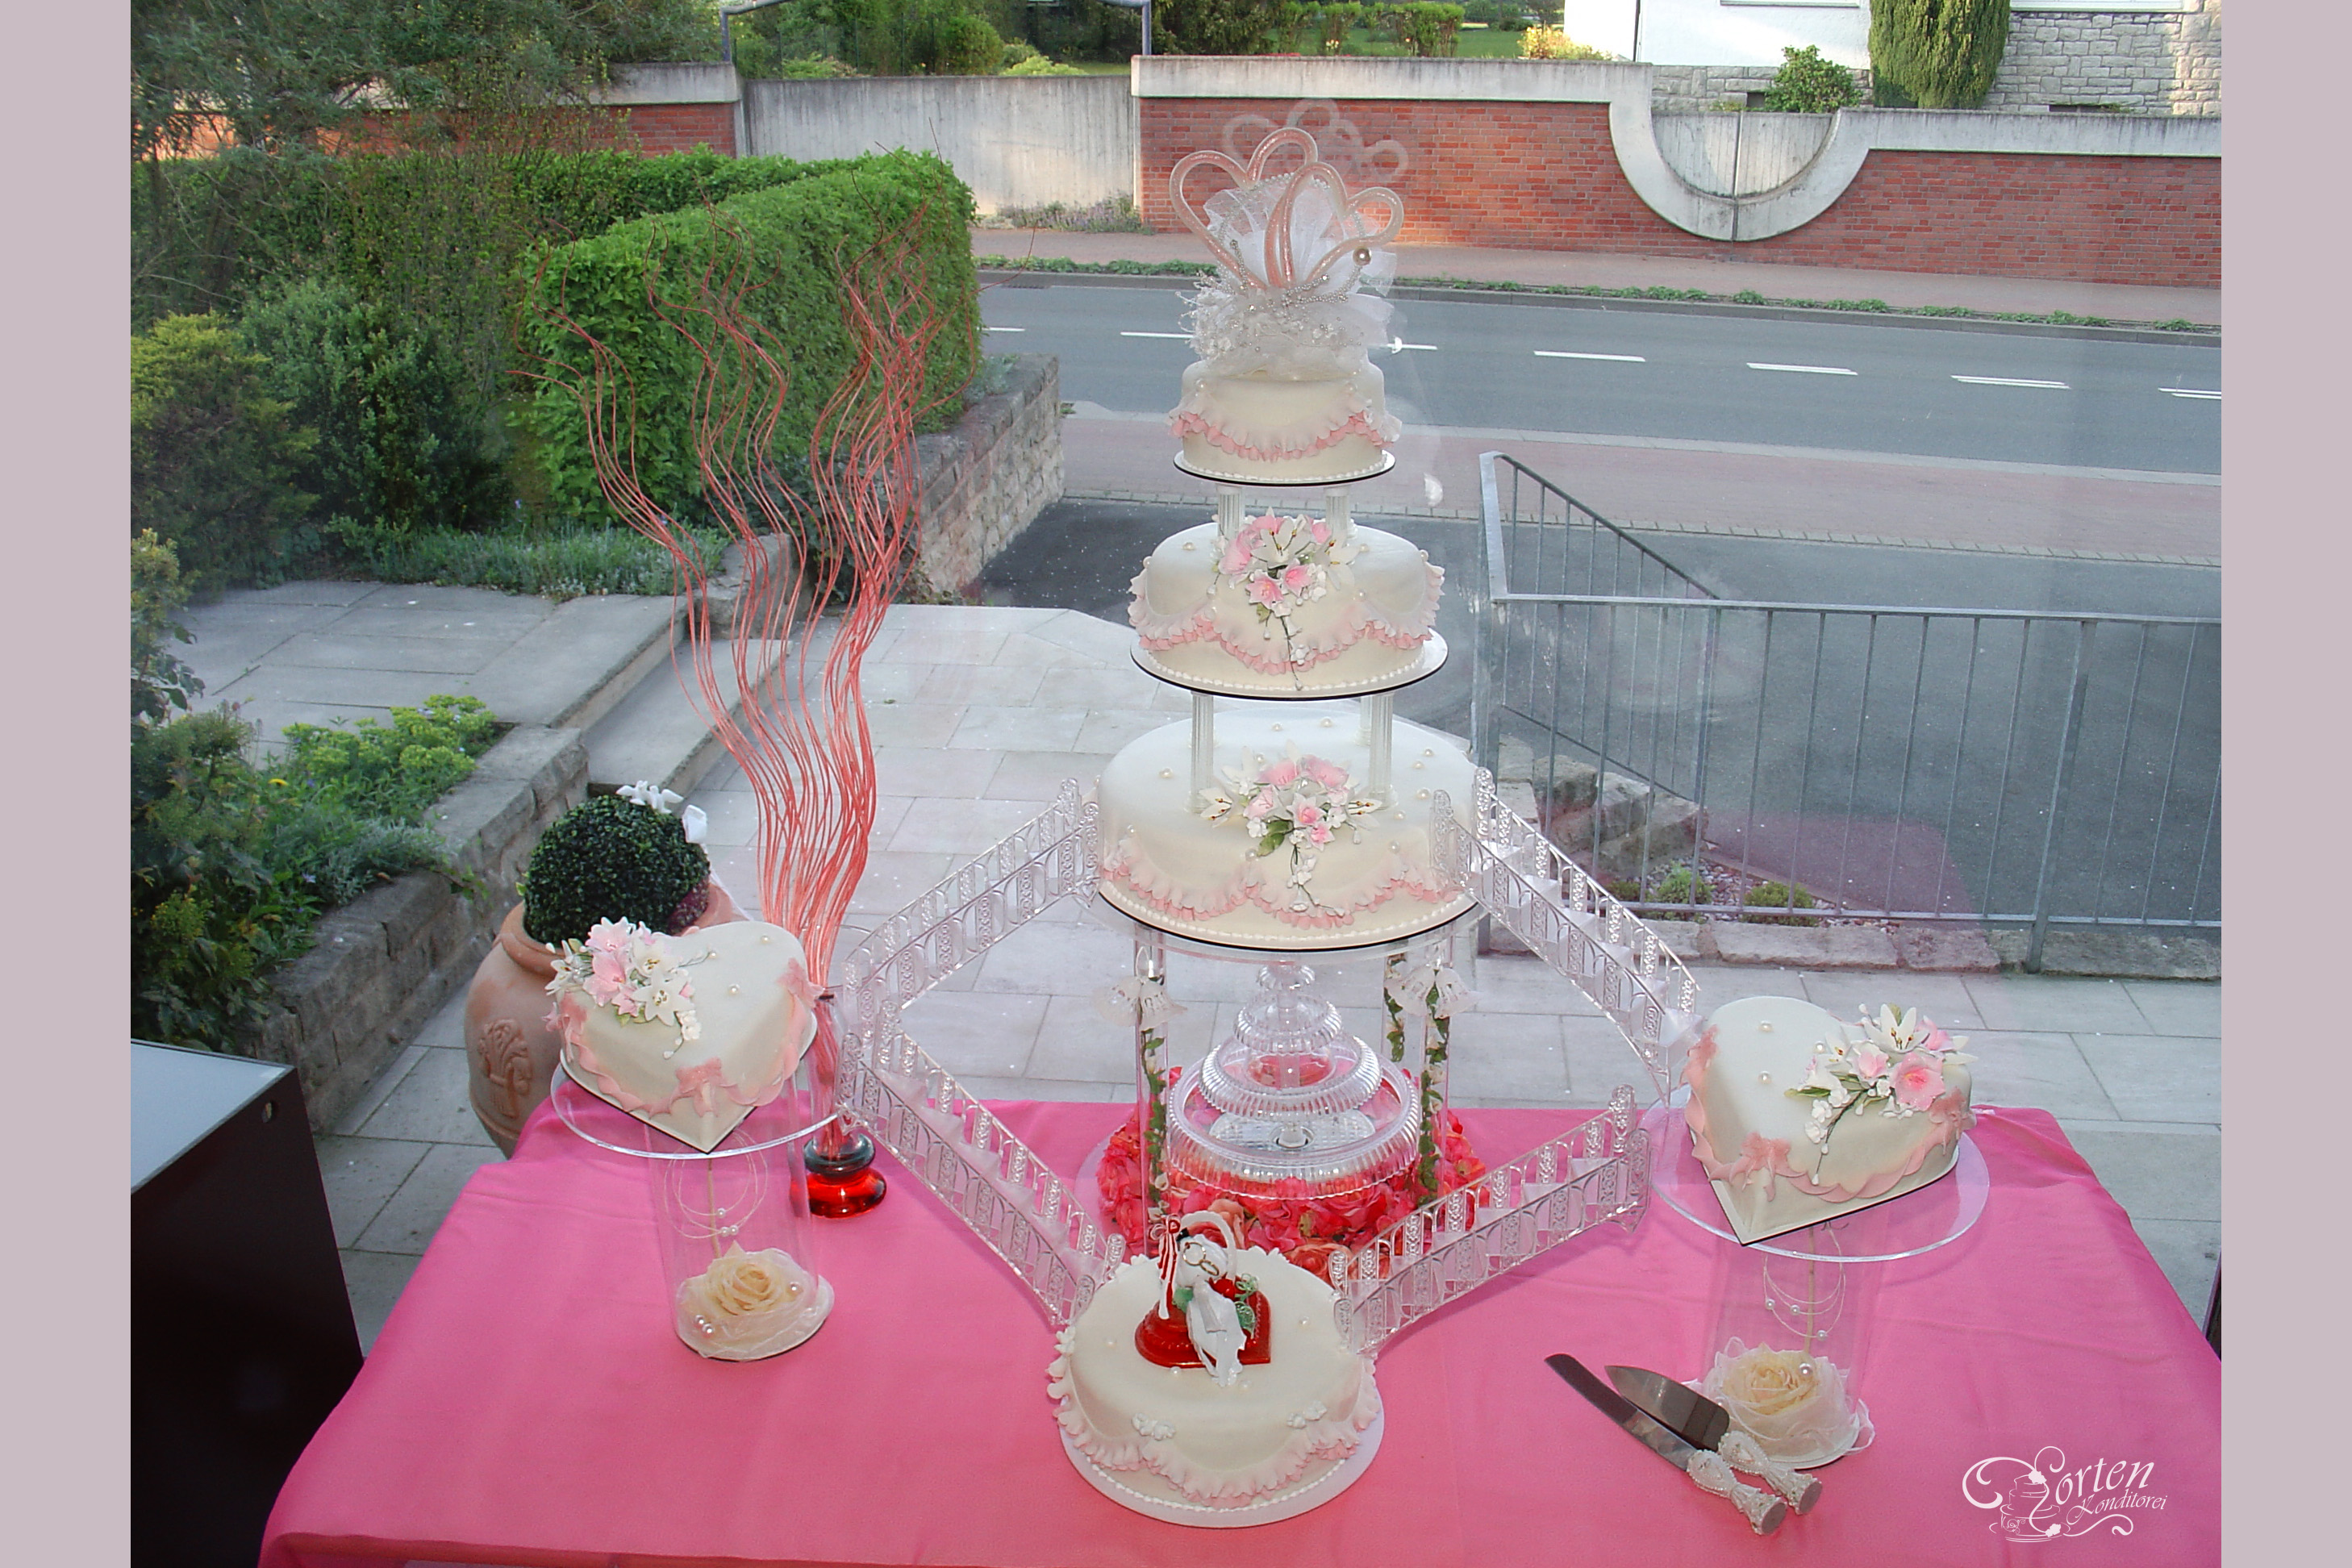 Hochzeits-Torte mit Wasserfall, Treppen und handgeblasenen Zucker-Tauben.